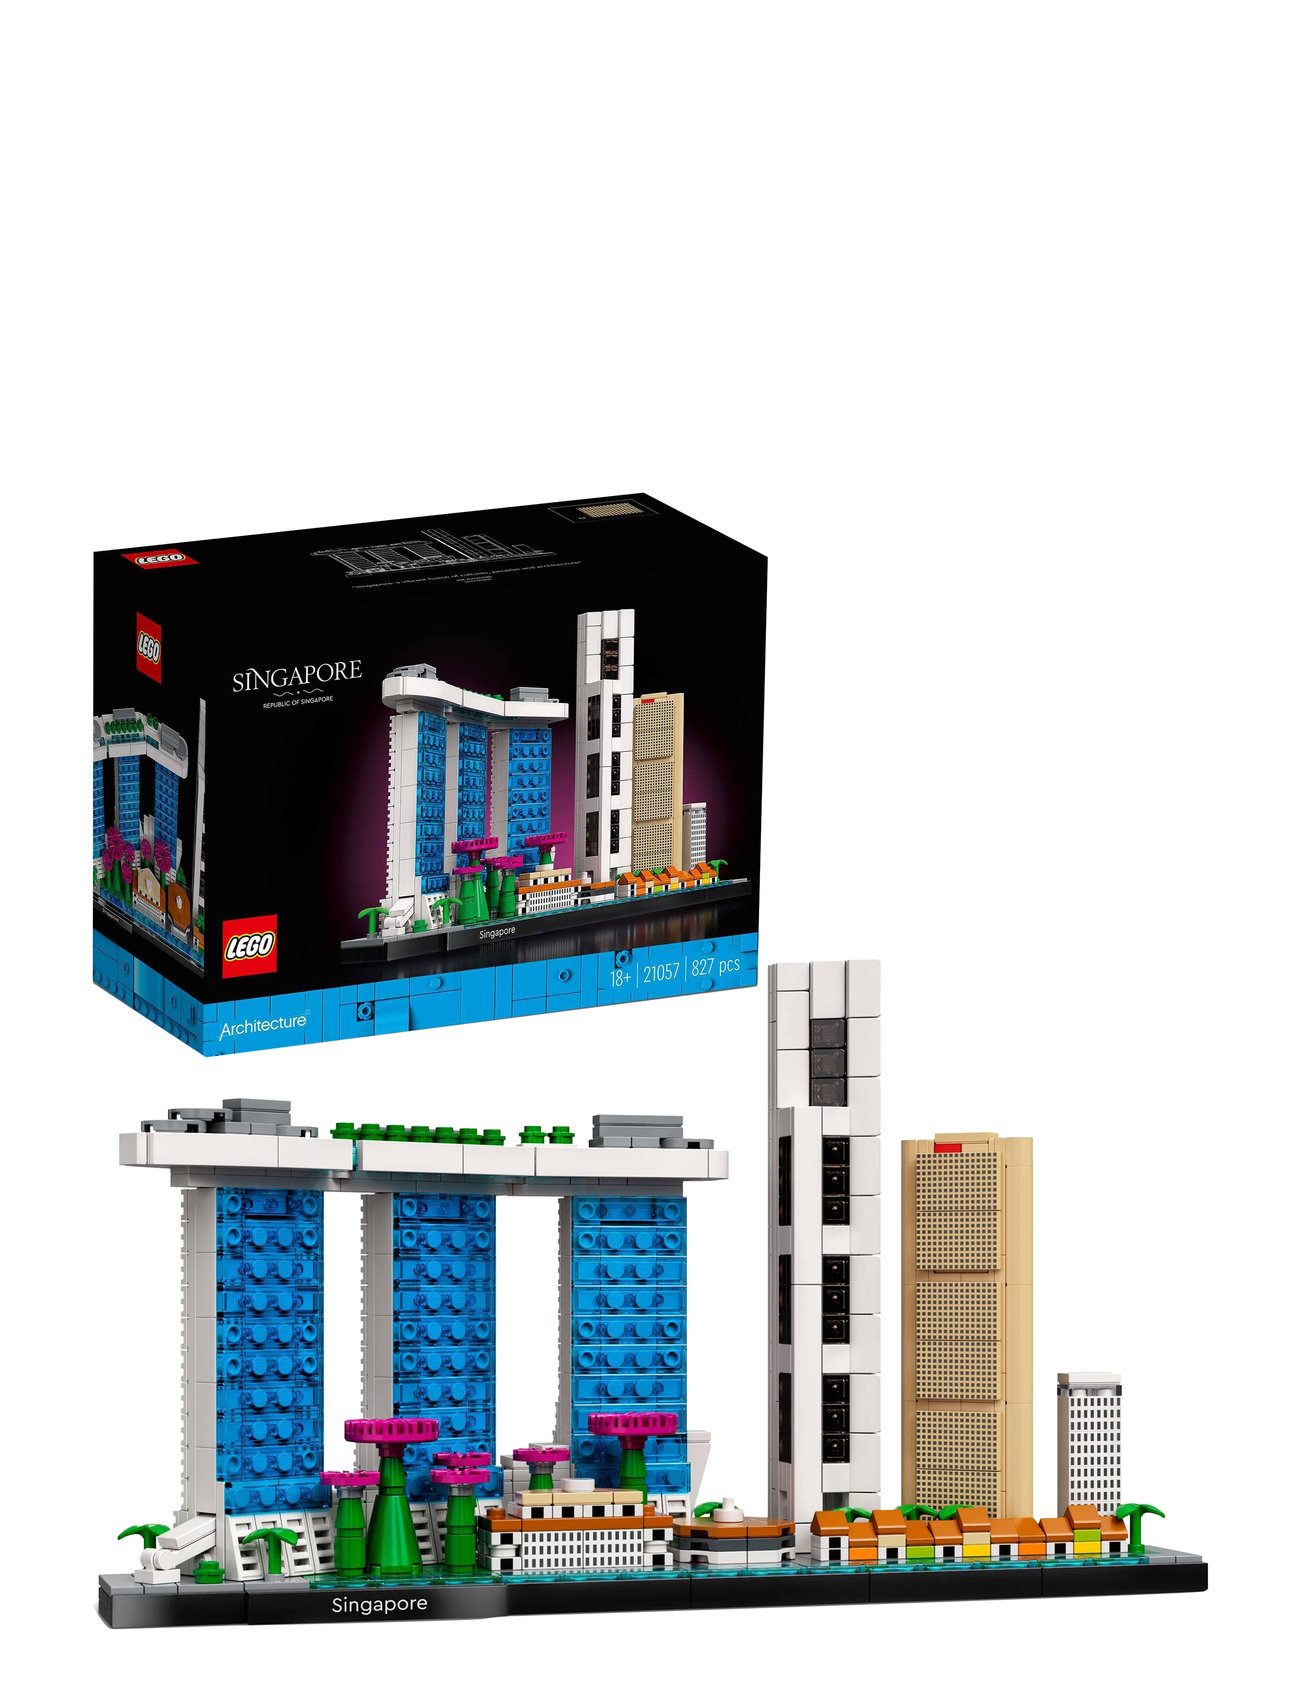 Singapore Model Kit For Adults Toys Lego Toys Lego Architecture Multi/patterned LEGO